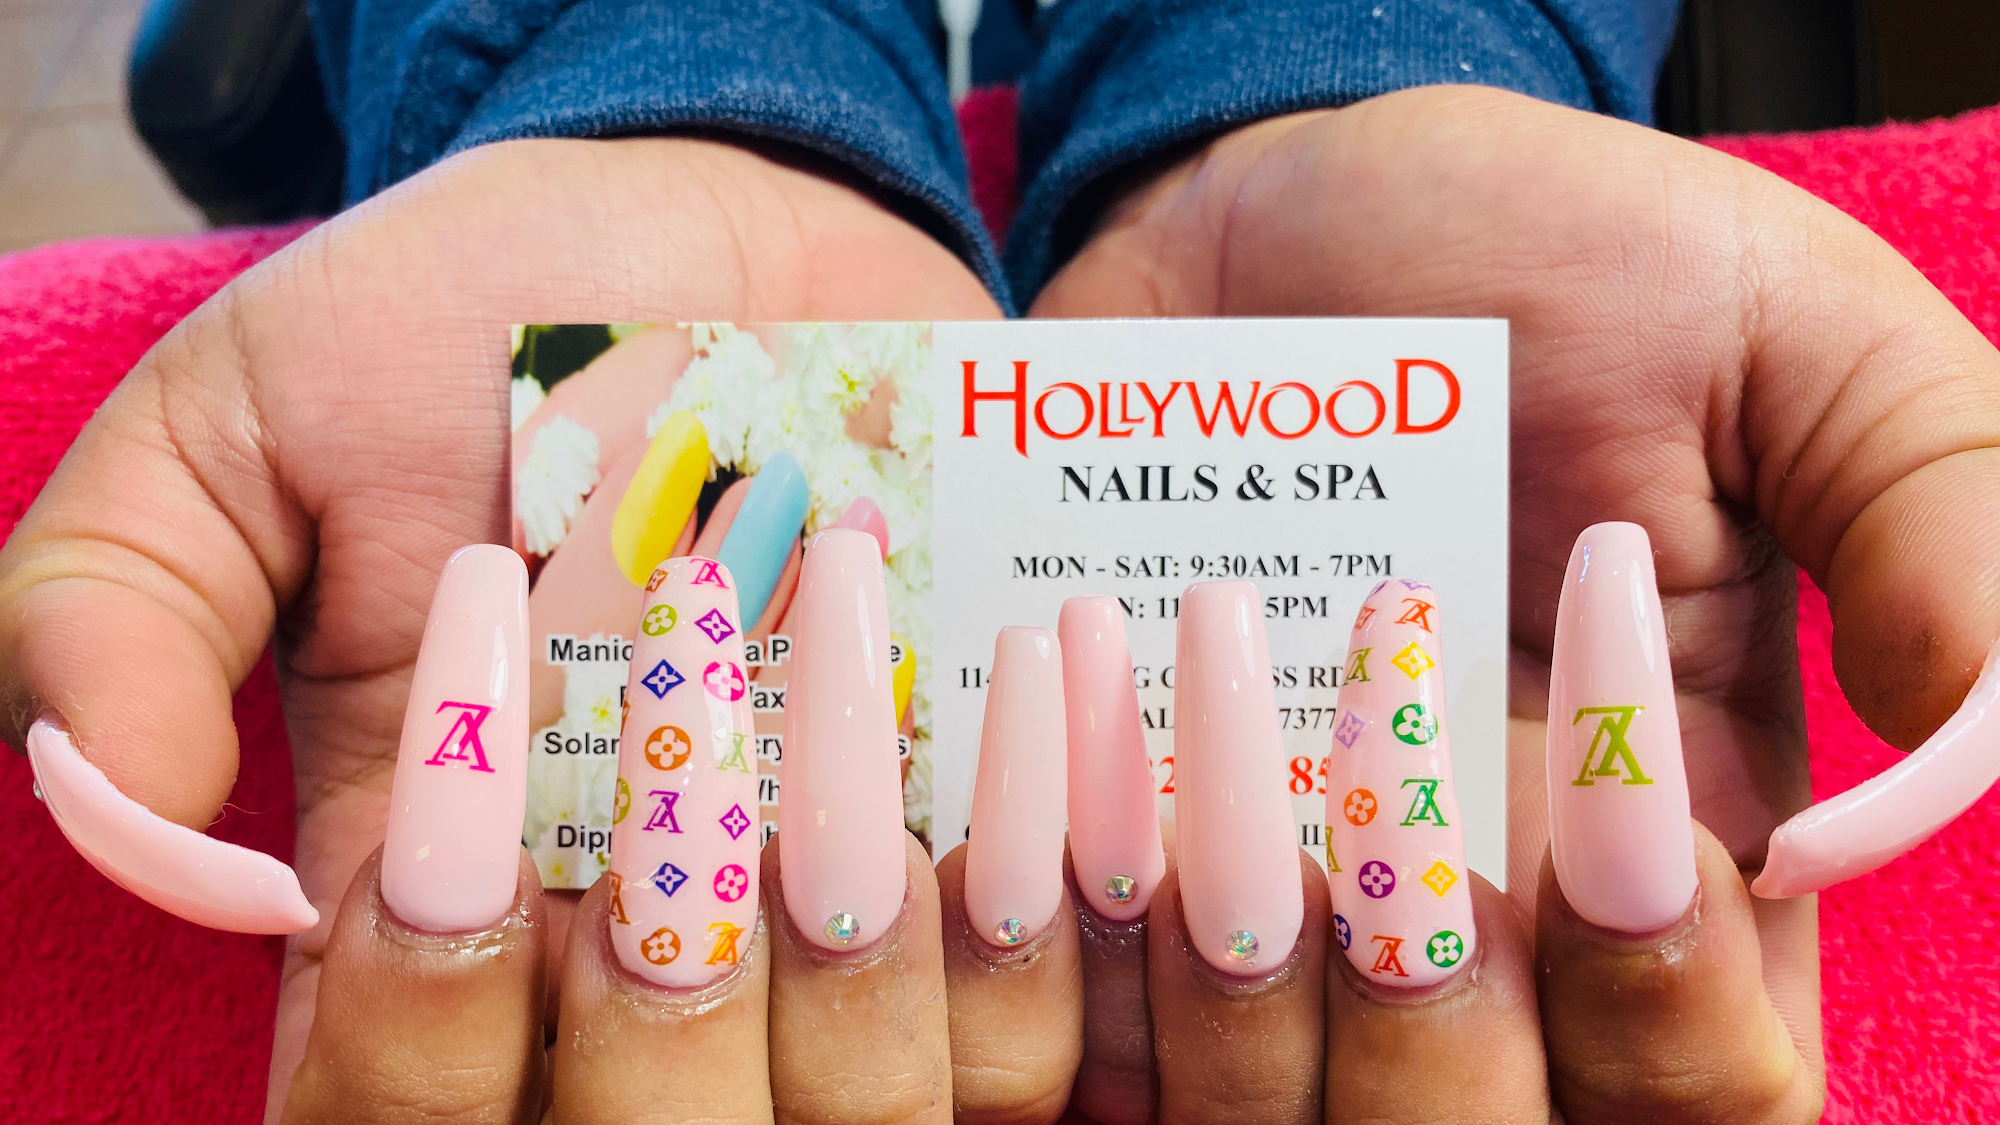 Hollywood Nails & Spa